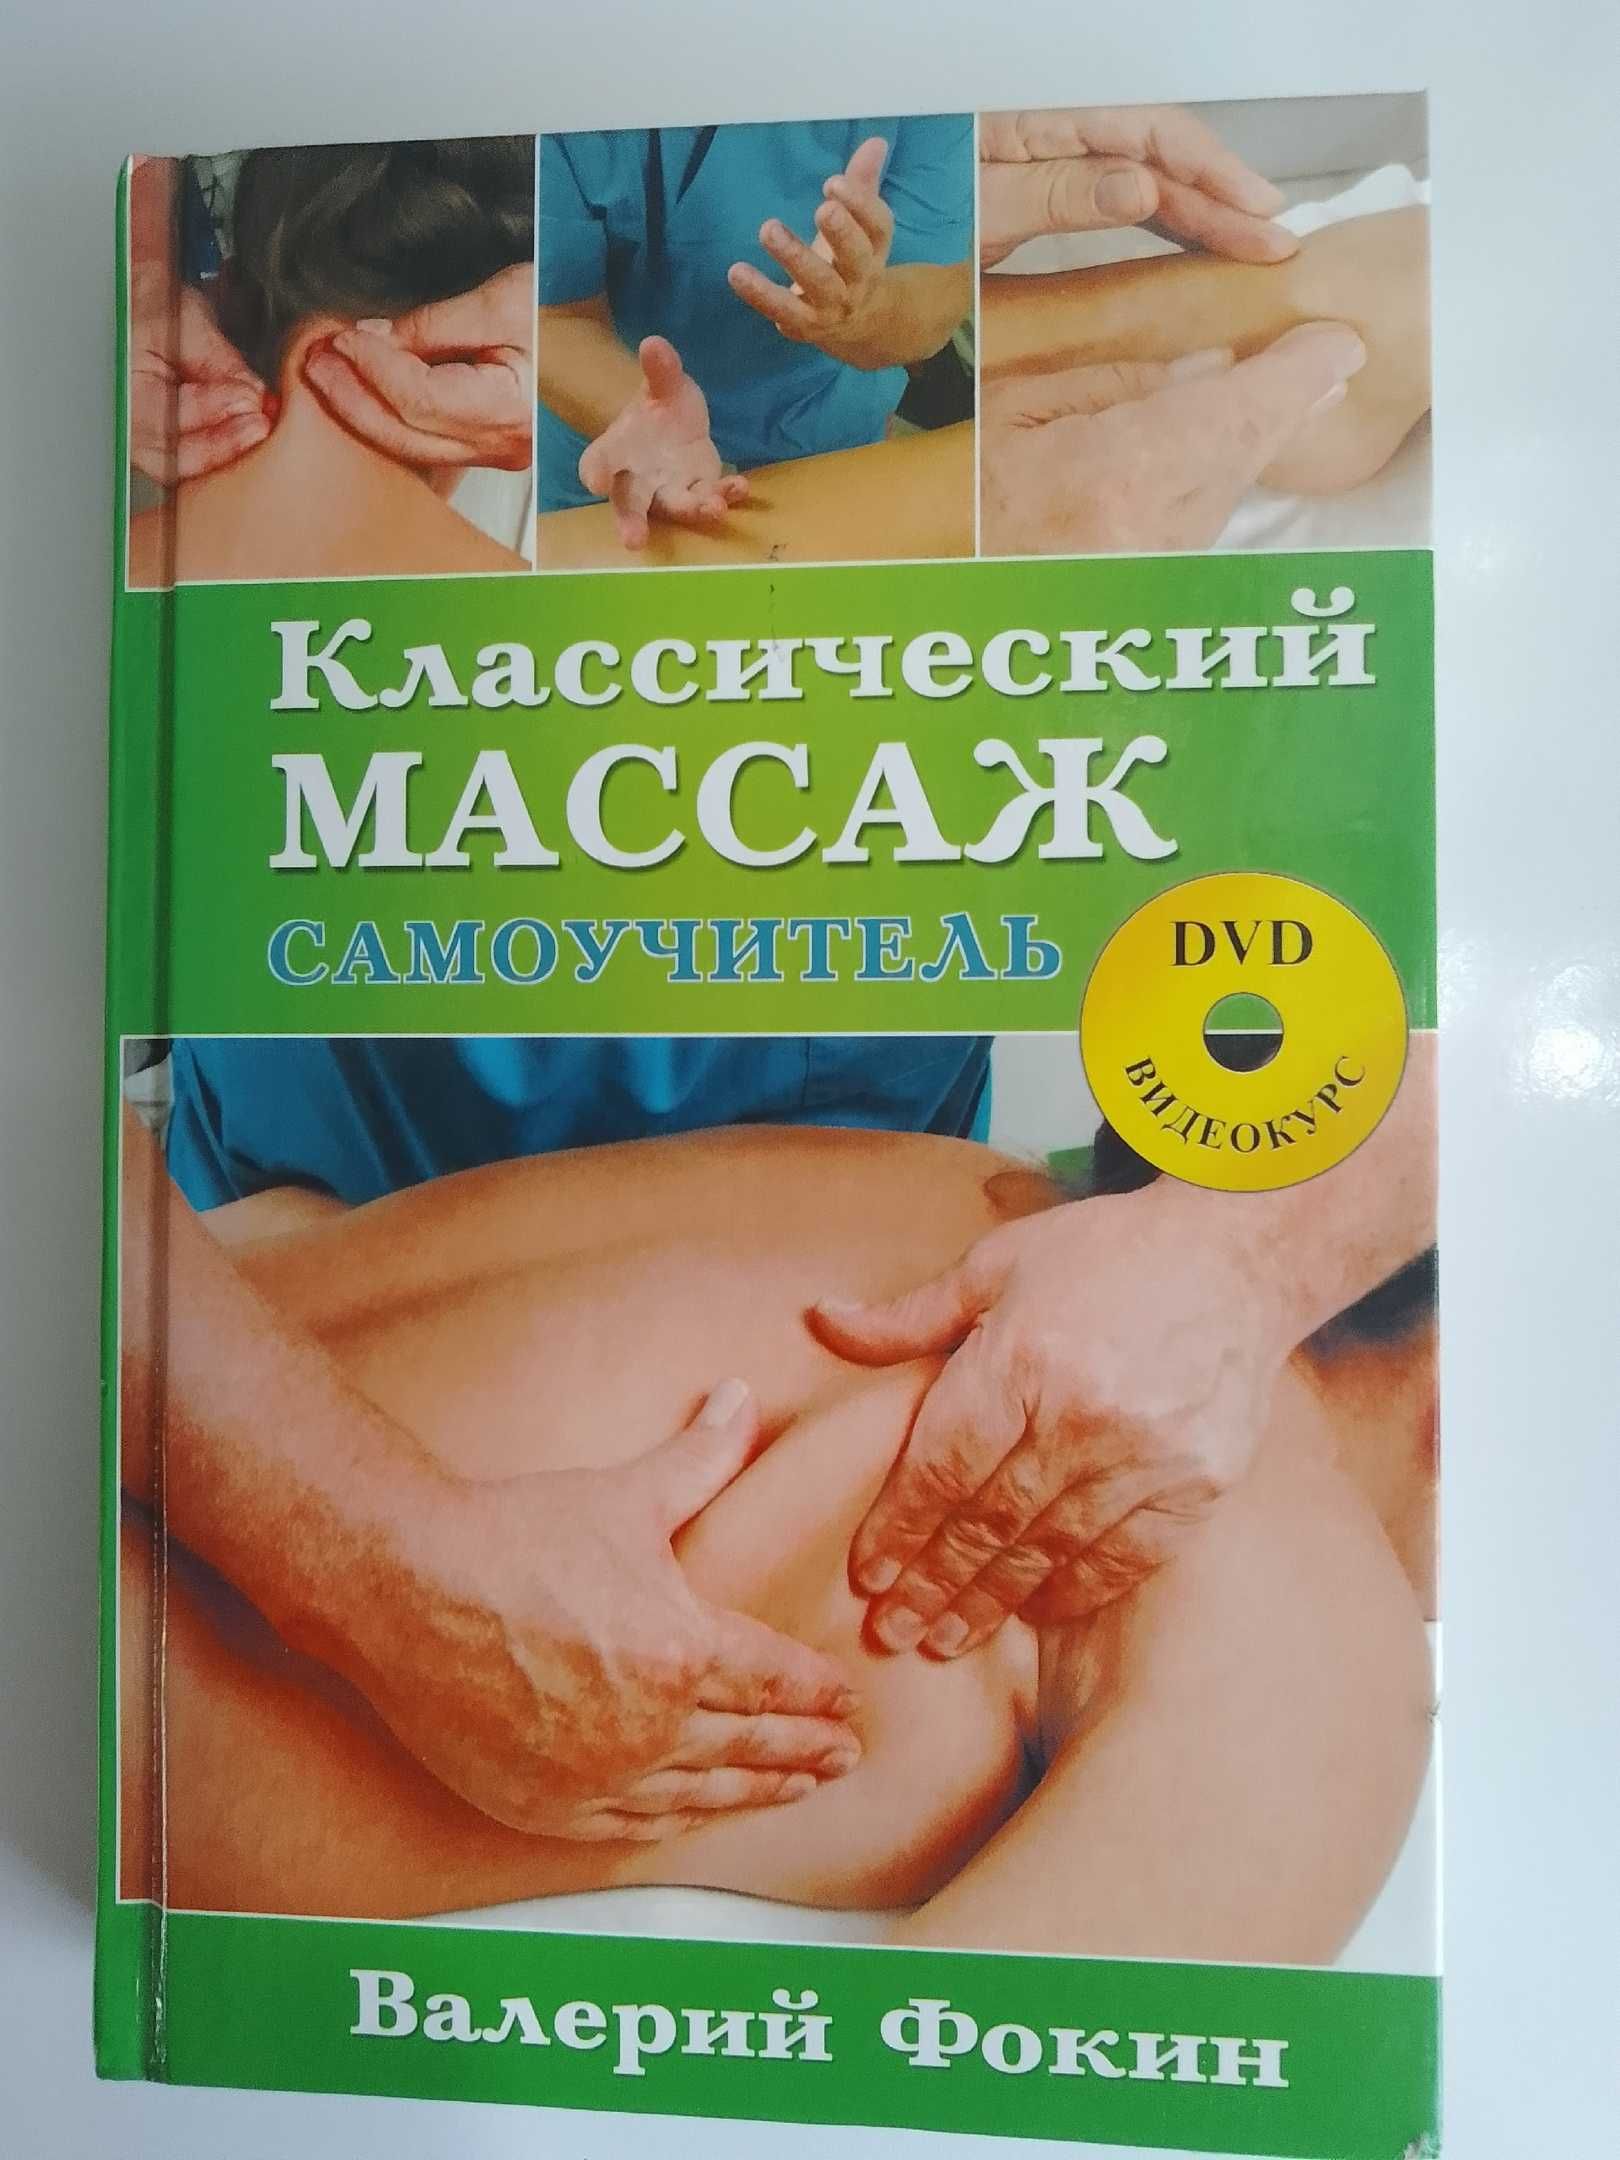 Самоучитель по массажу Валерия Фокина с DVD диском